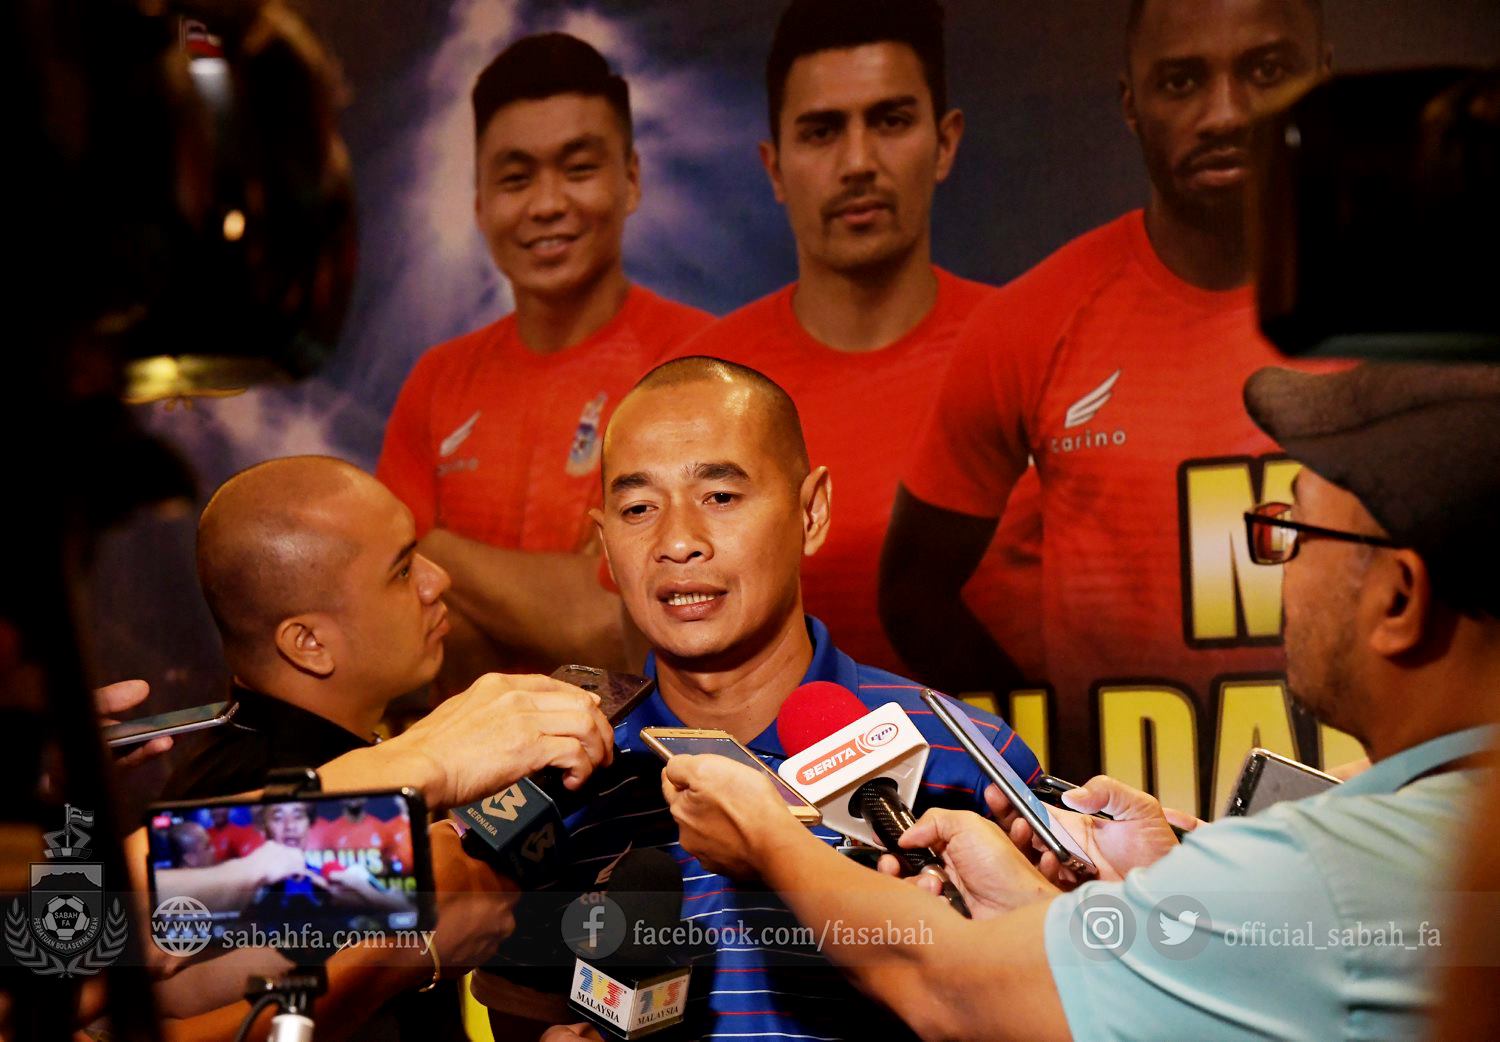 Dilepas Sabah FA, Kurniawan Dwi Yulianto Bakal Coba Peruntungan Lagi di Klub Luar Negeri